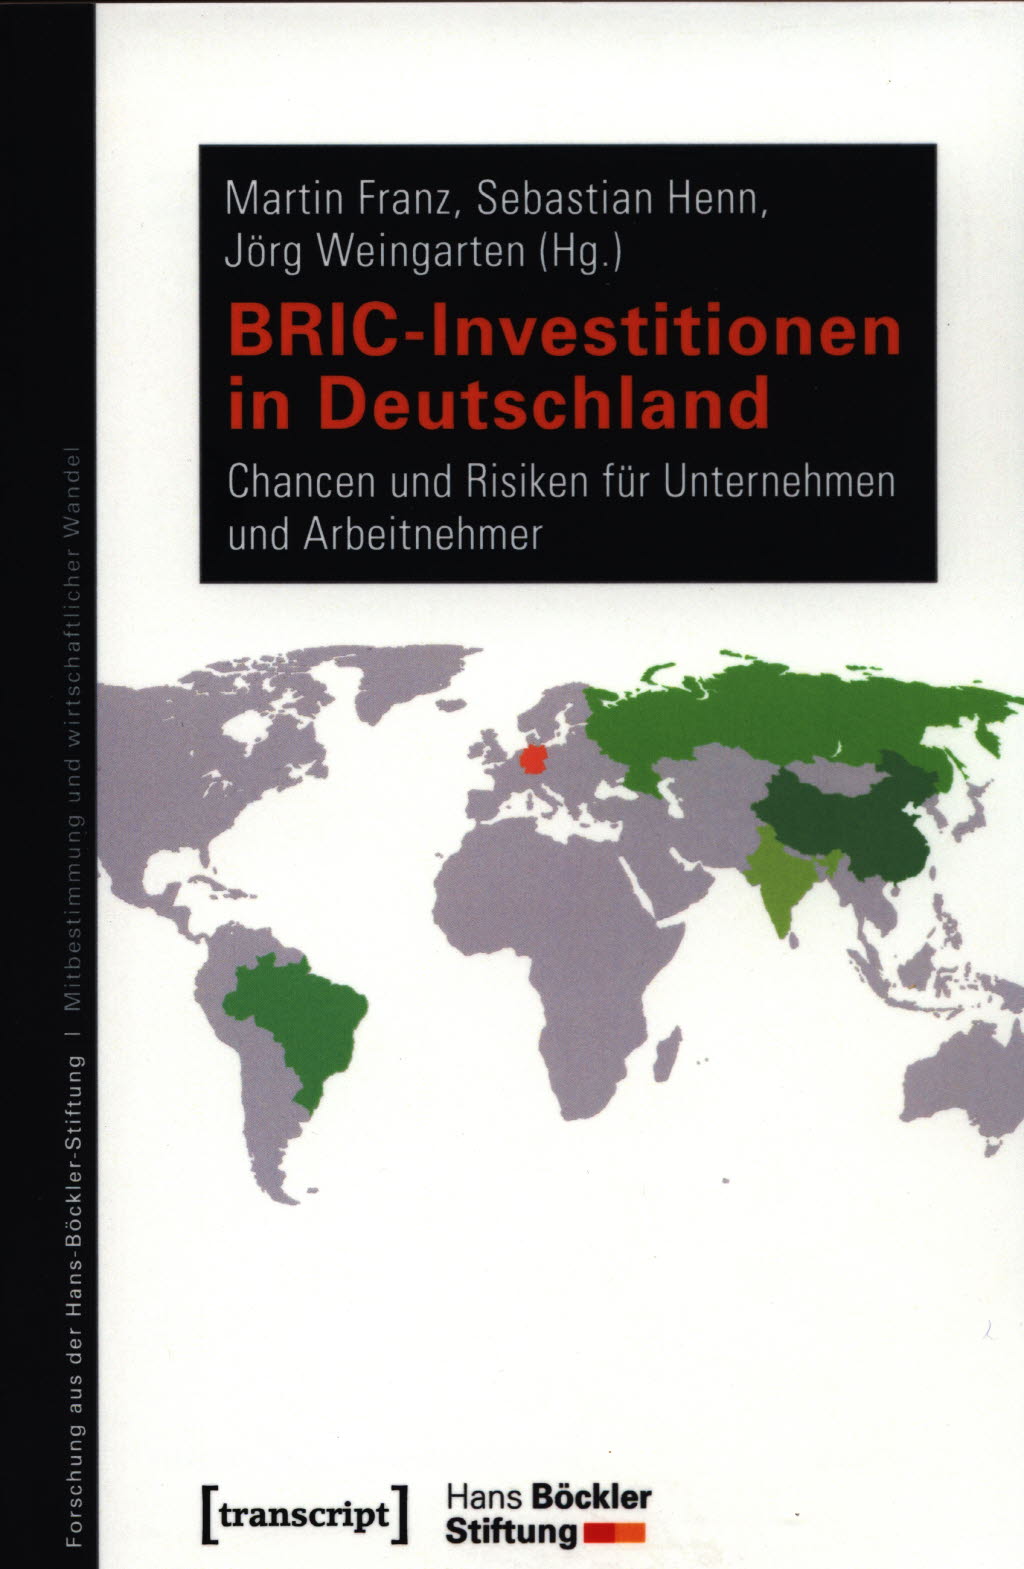 BRIC-Investitionen in Deutschland